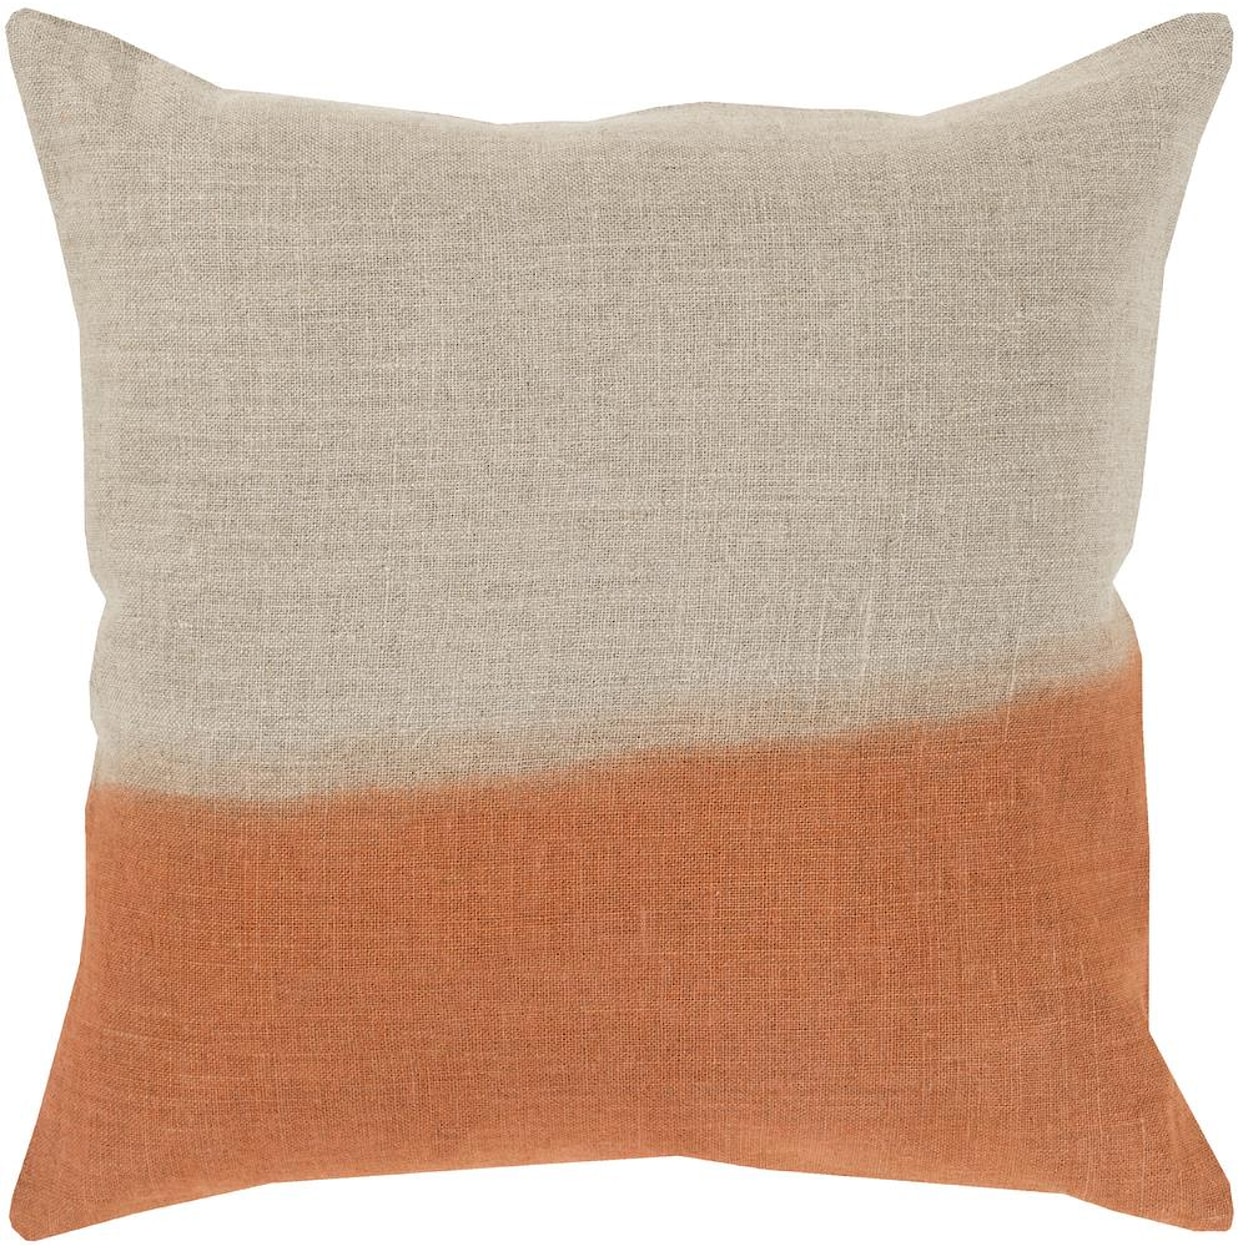 Surya Pillows 22" x 22" Dip Dyed Pillow